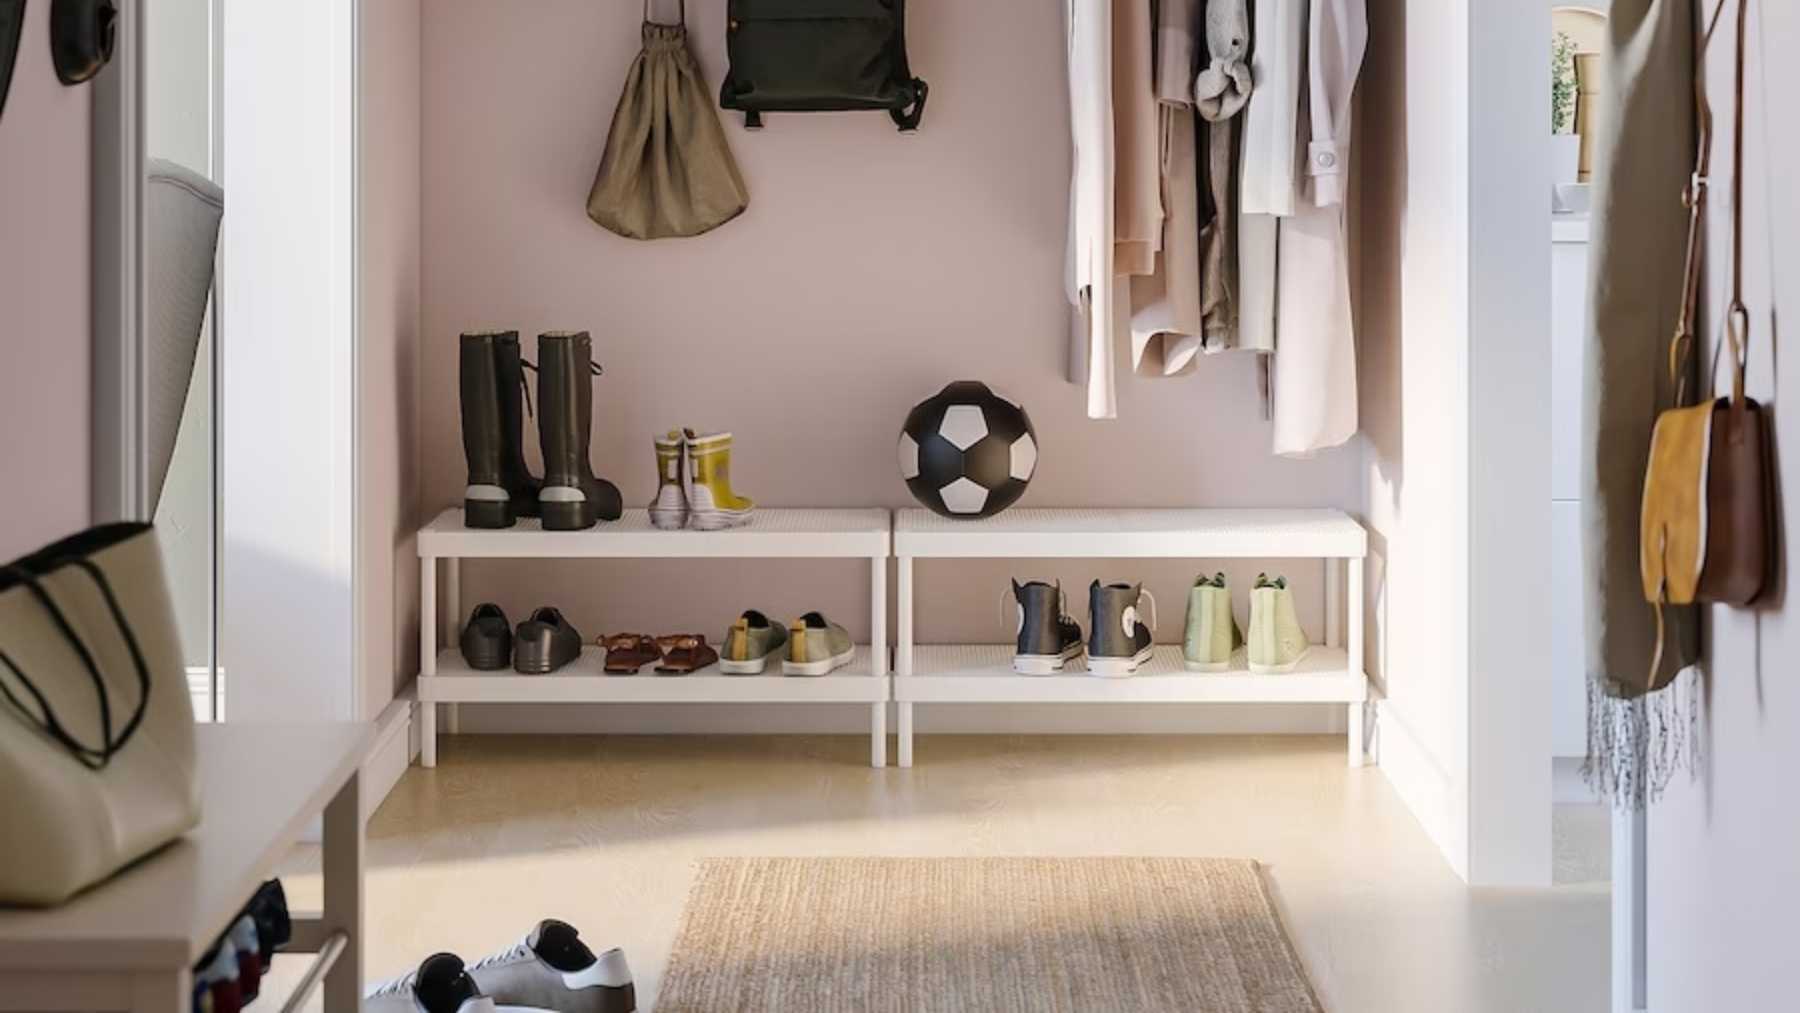 El zapatero de Ikea estilo minimalista más vendido para casas